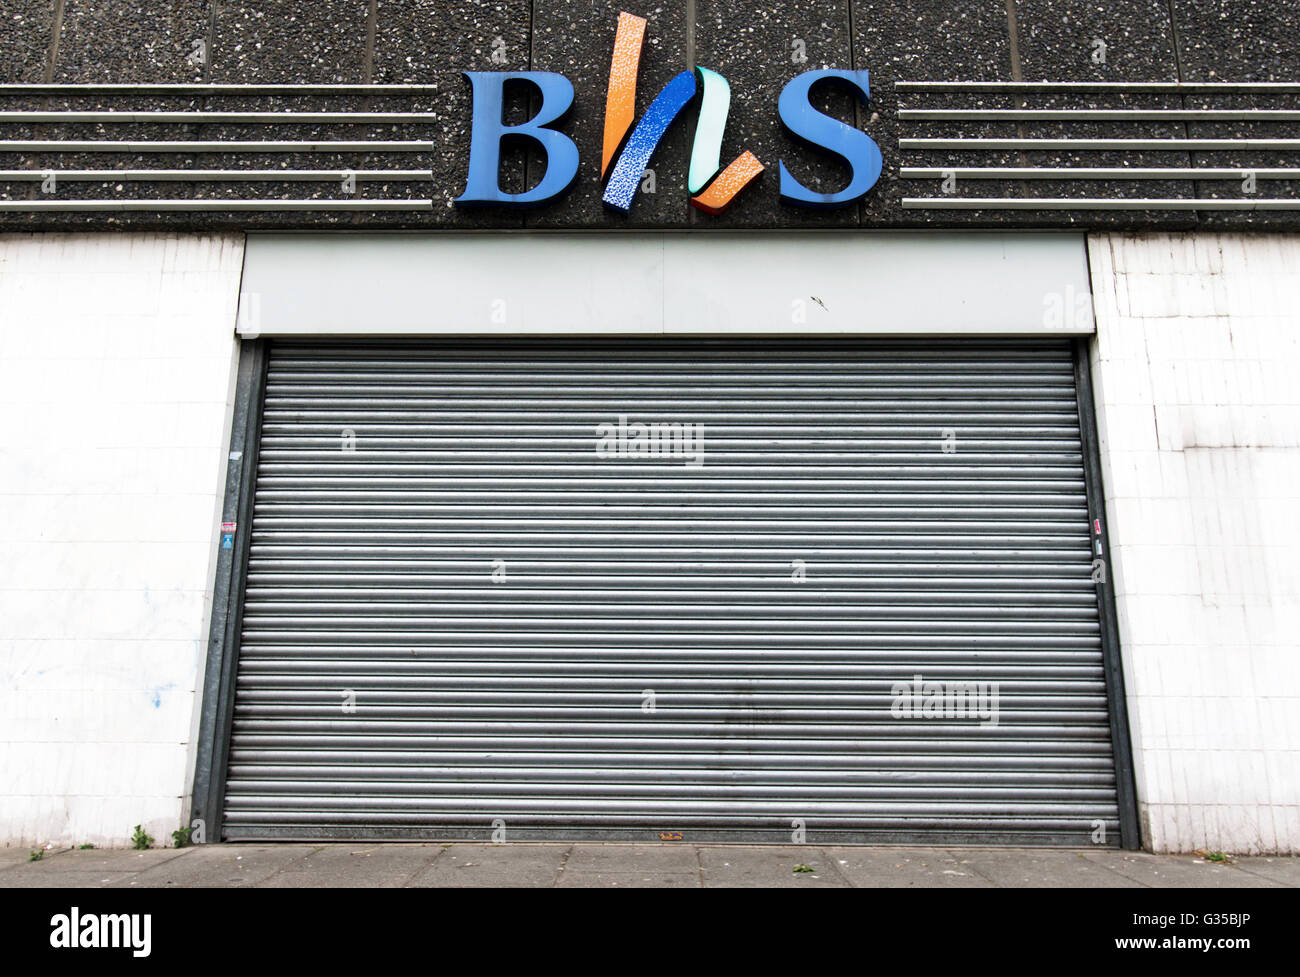 Die Fensterläden Eingang eines BHS Stores in Wood Green, London. PRESSEVERBAND Foto. Bild Datum: Donnerstag, 2. Juni 2016. Bildnachweis sollte lauten: Yui Mok/PA Wire Stockfoto